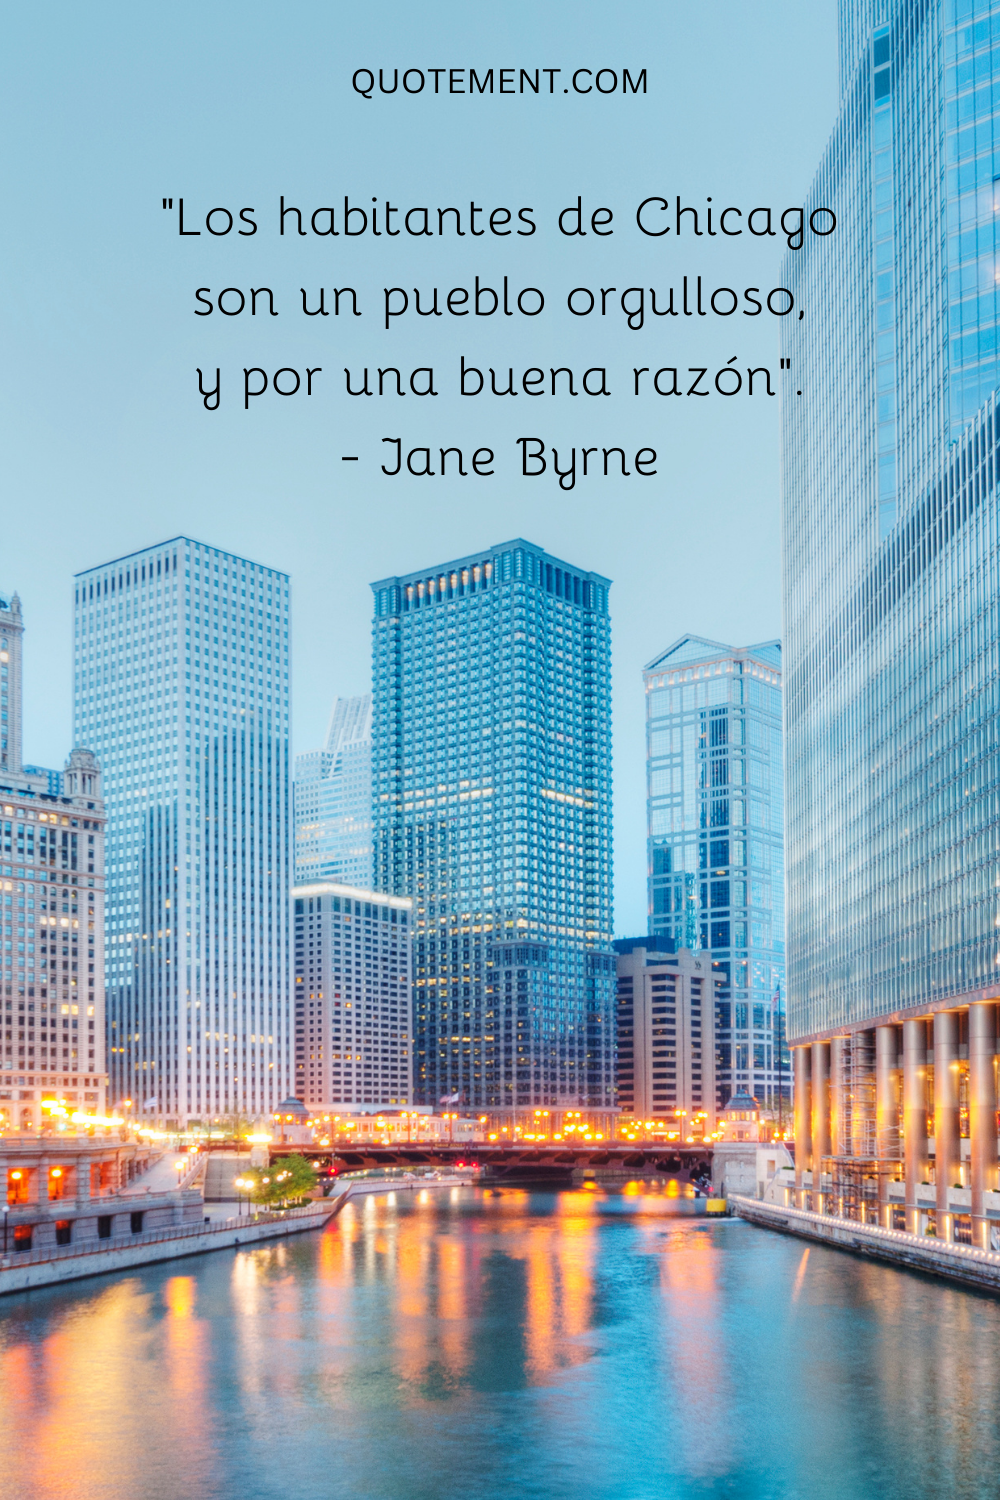 "Los habitantes de Chicago son un pueblo orgulloso, y por una buena razón". - Jane Byrne